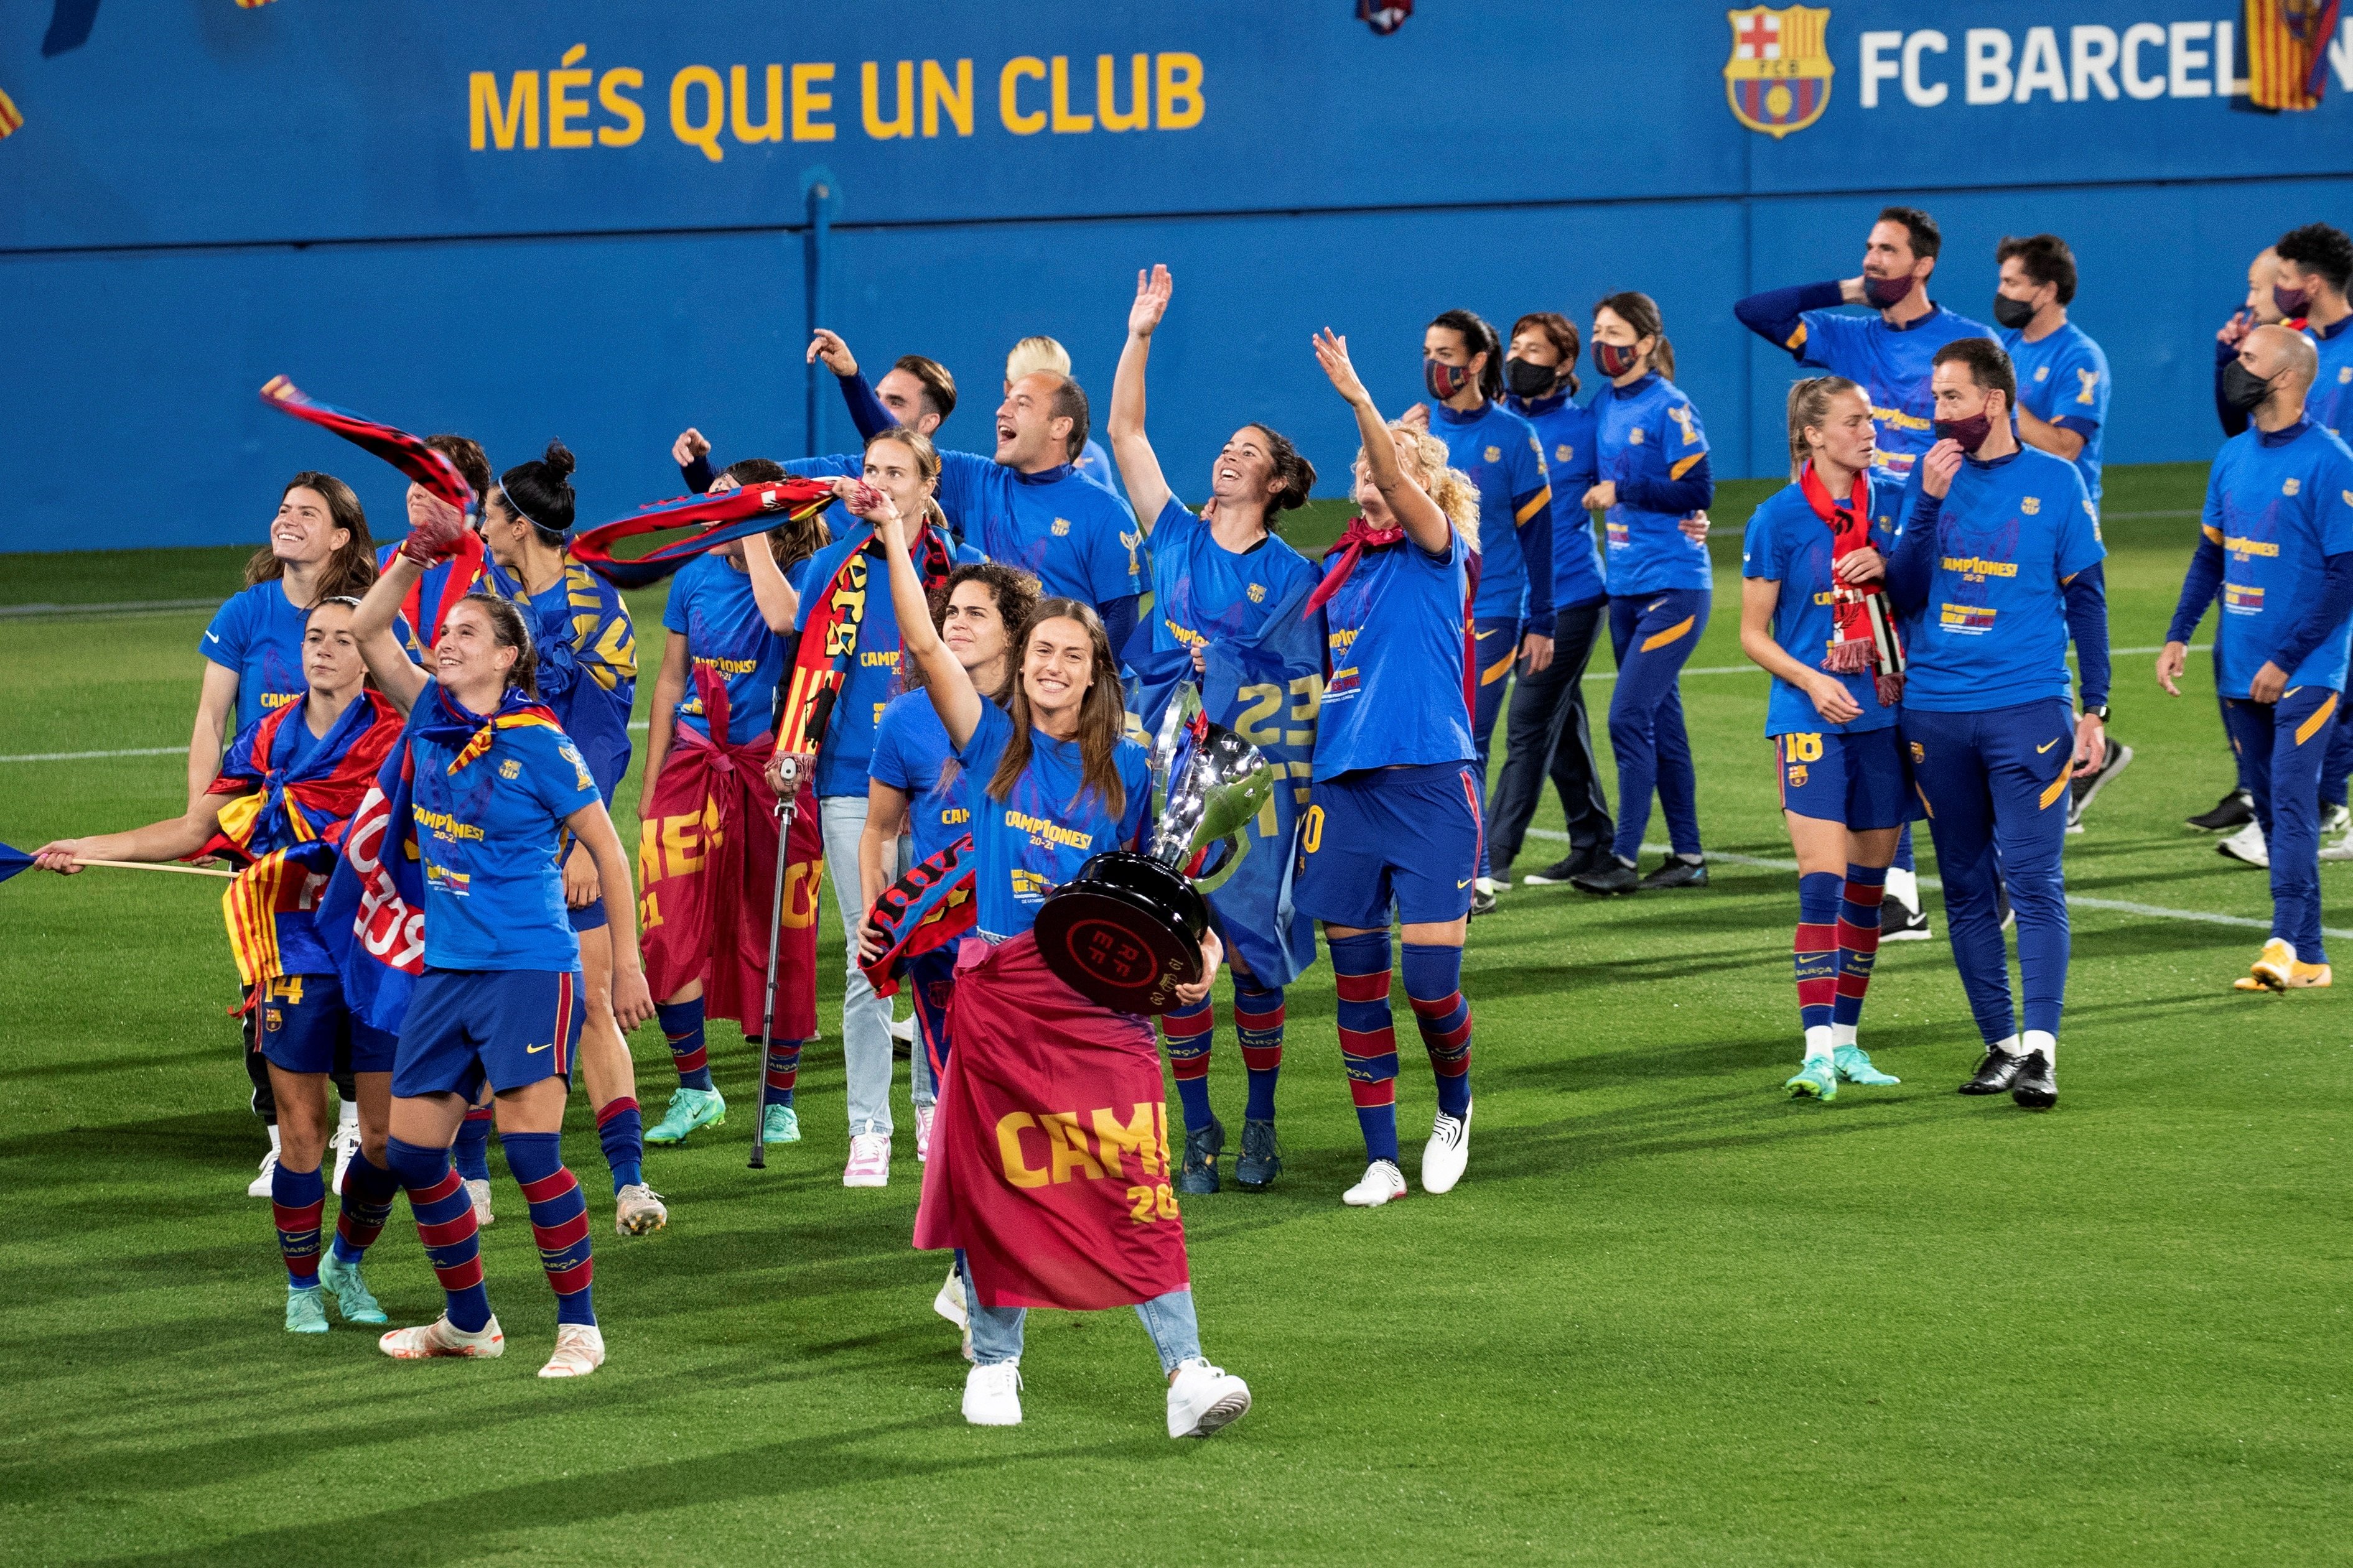 El Barça jugará este verano el Trofeo Joan Gamper femenino